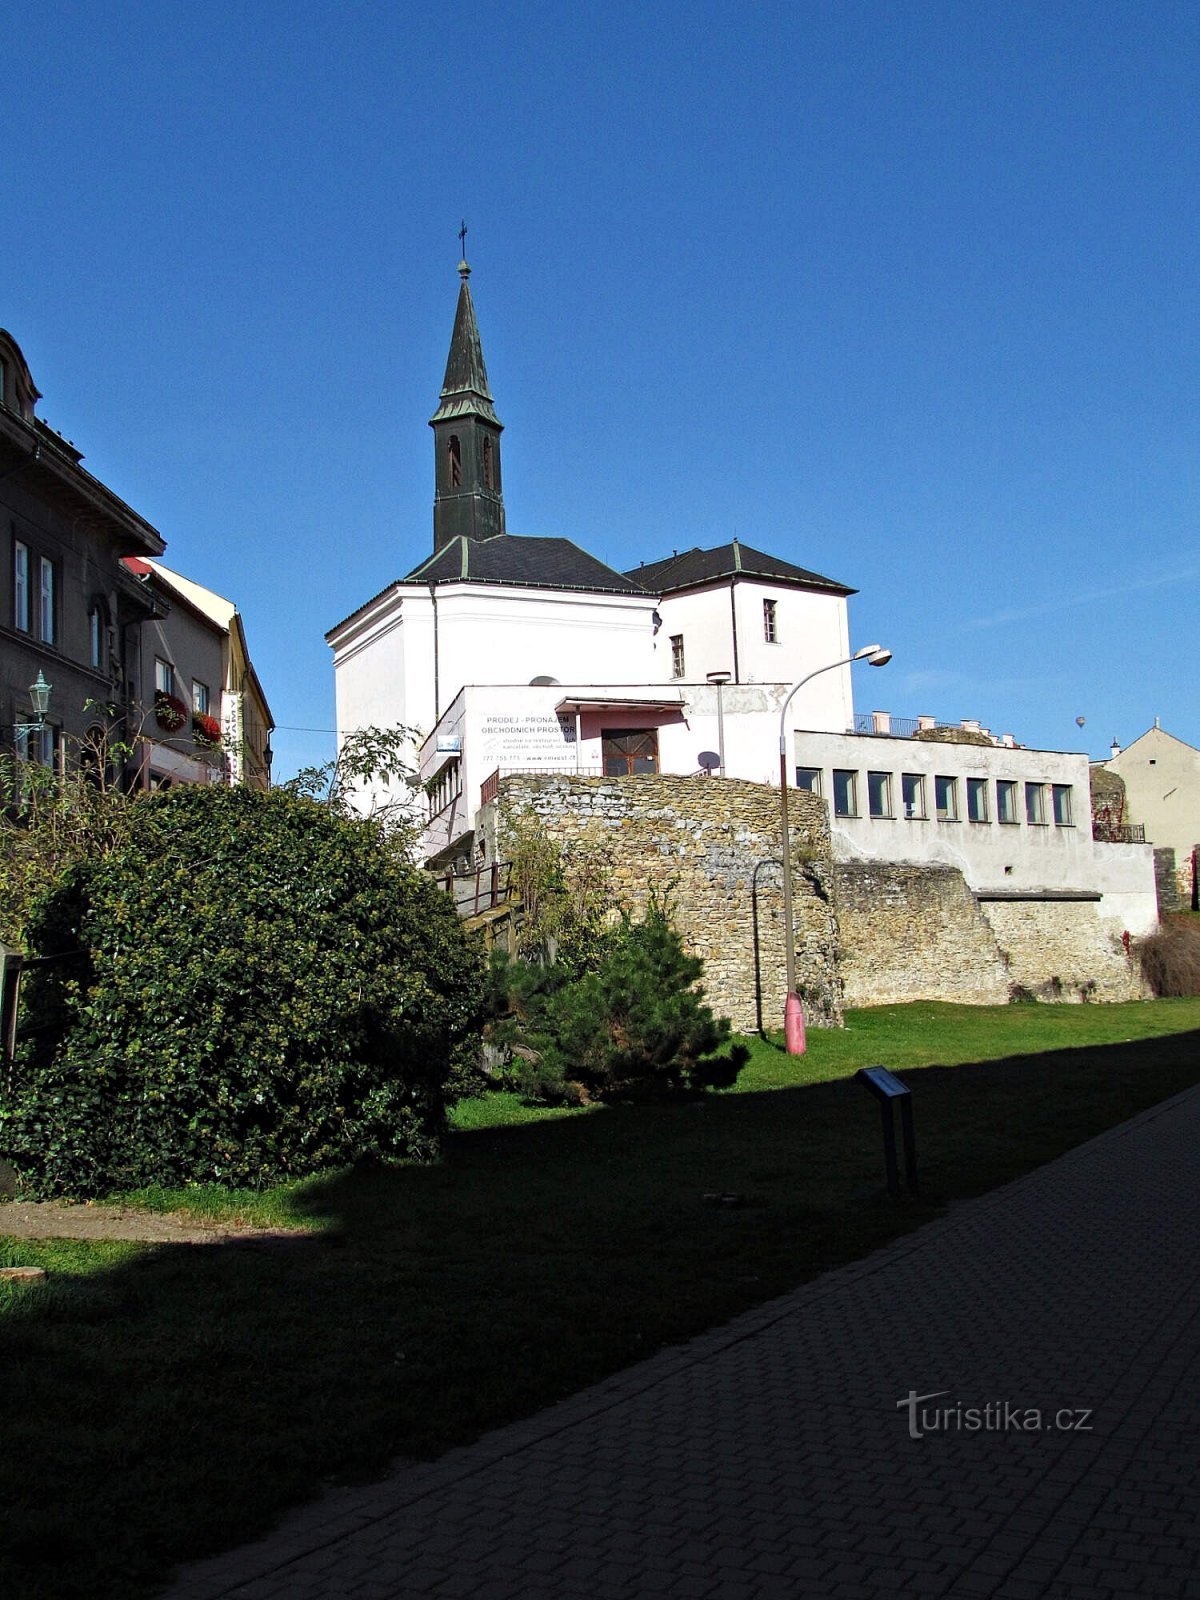 St.-Georgs-Kirche in Přerov